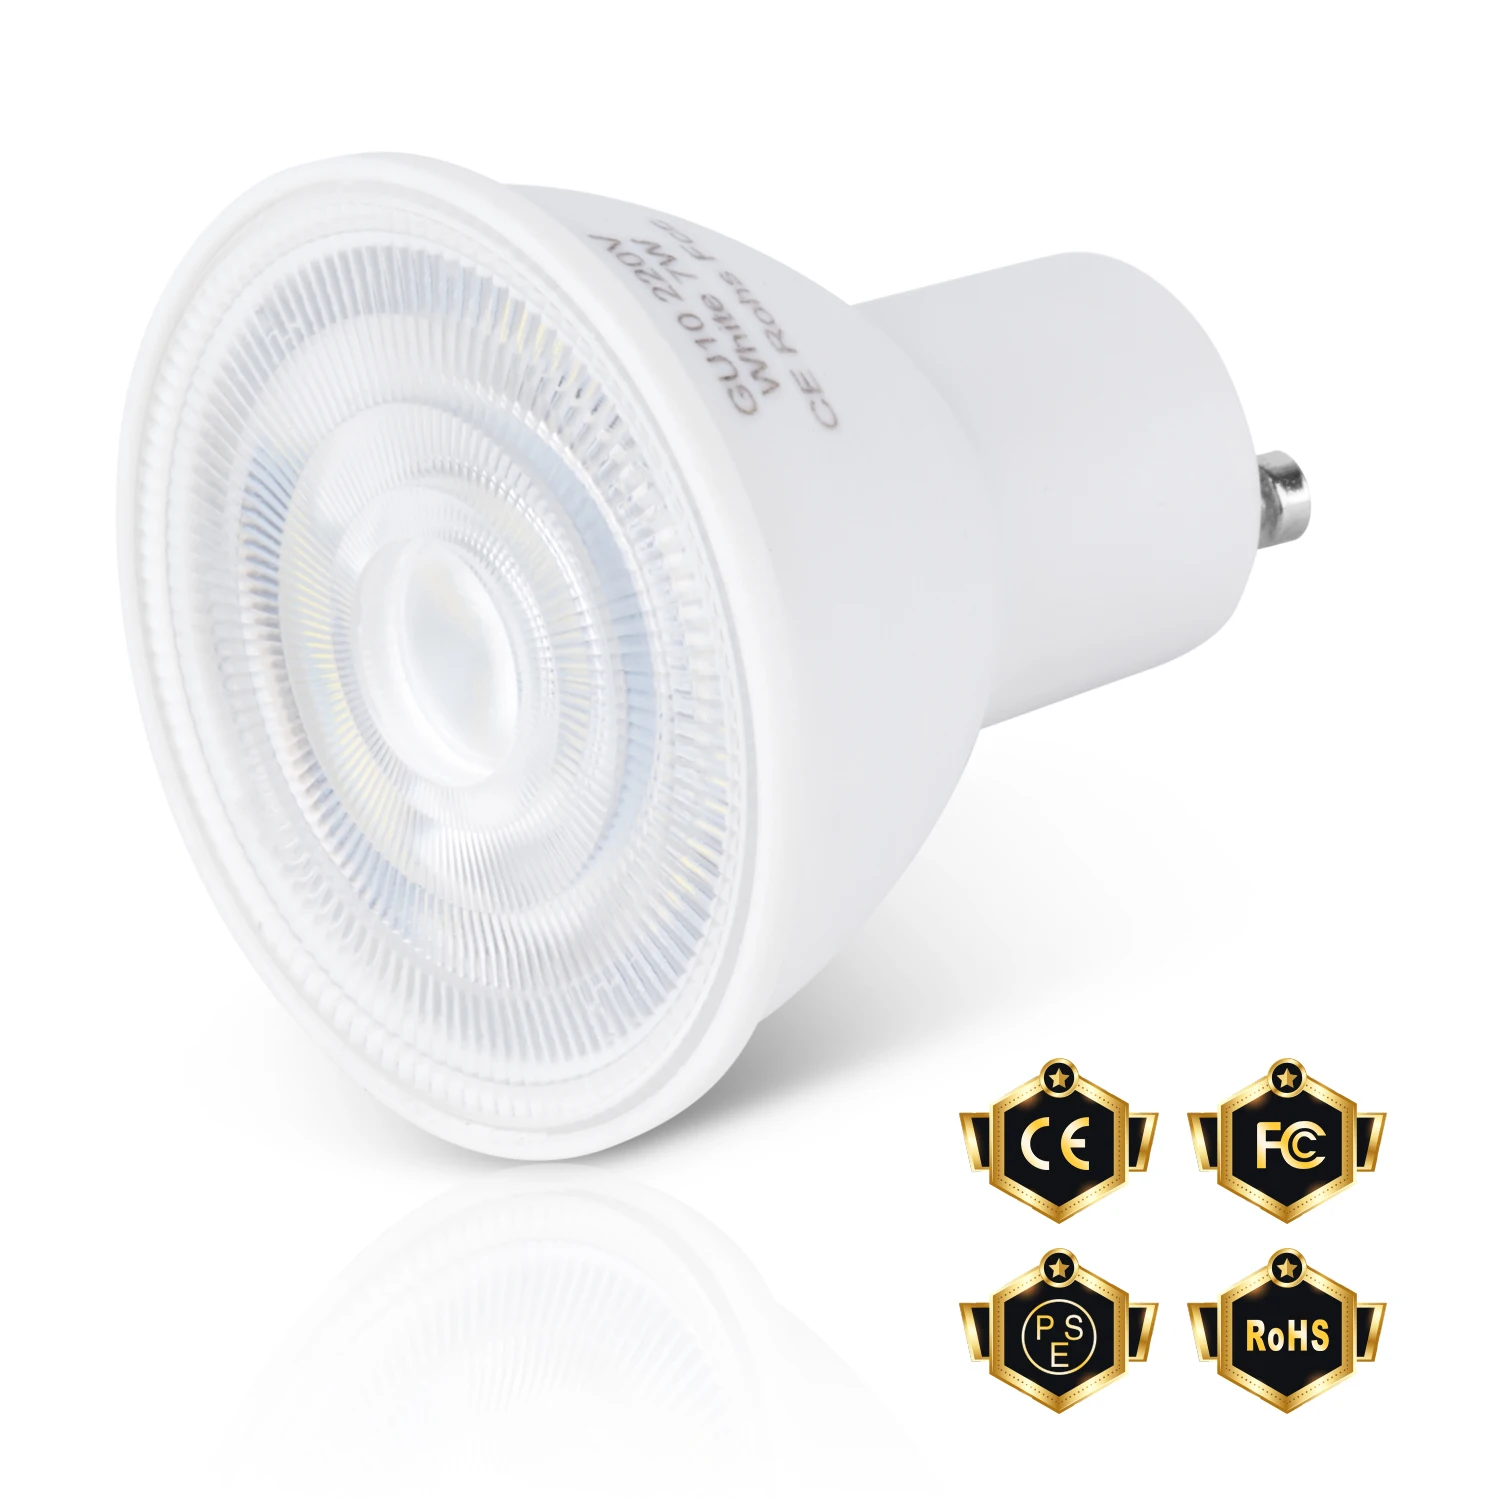 220V LED Lamp Bulb GU10 Spotlight MR16 Ceiling Light E27 Bombillas E14 Ampoule 240V Candle Bulb LED Chandeliers For Home Bedroom